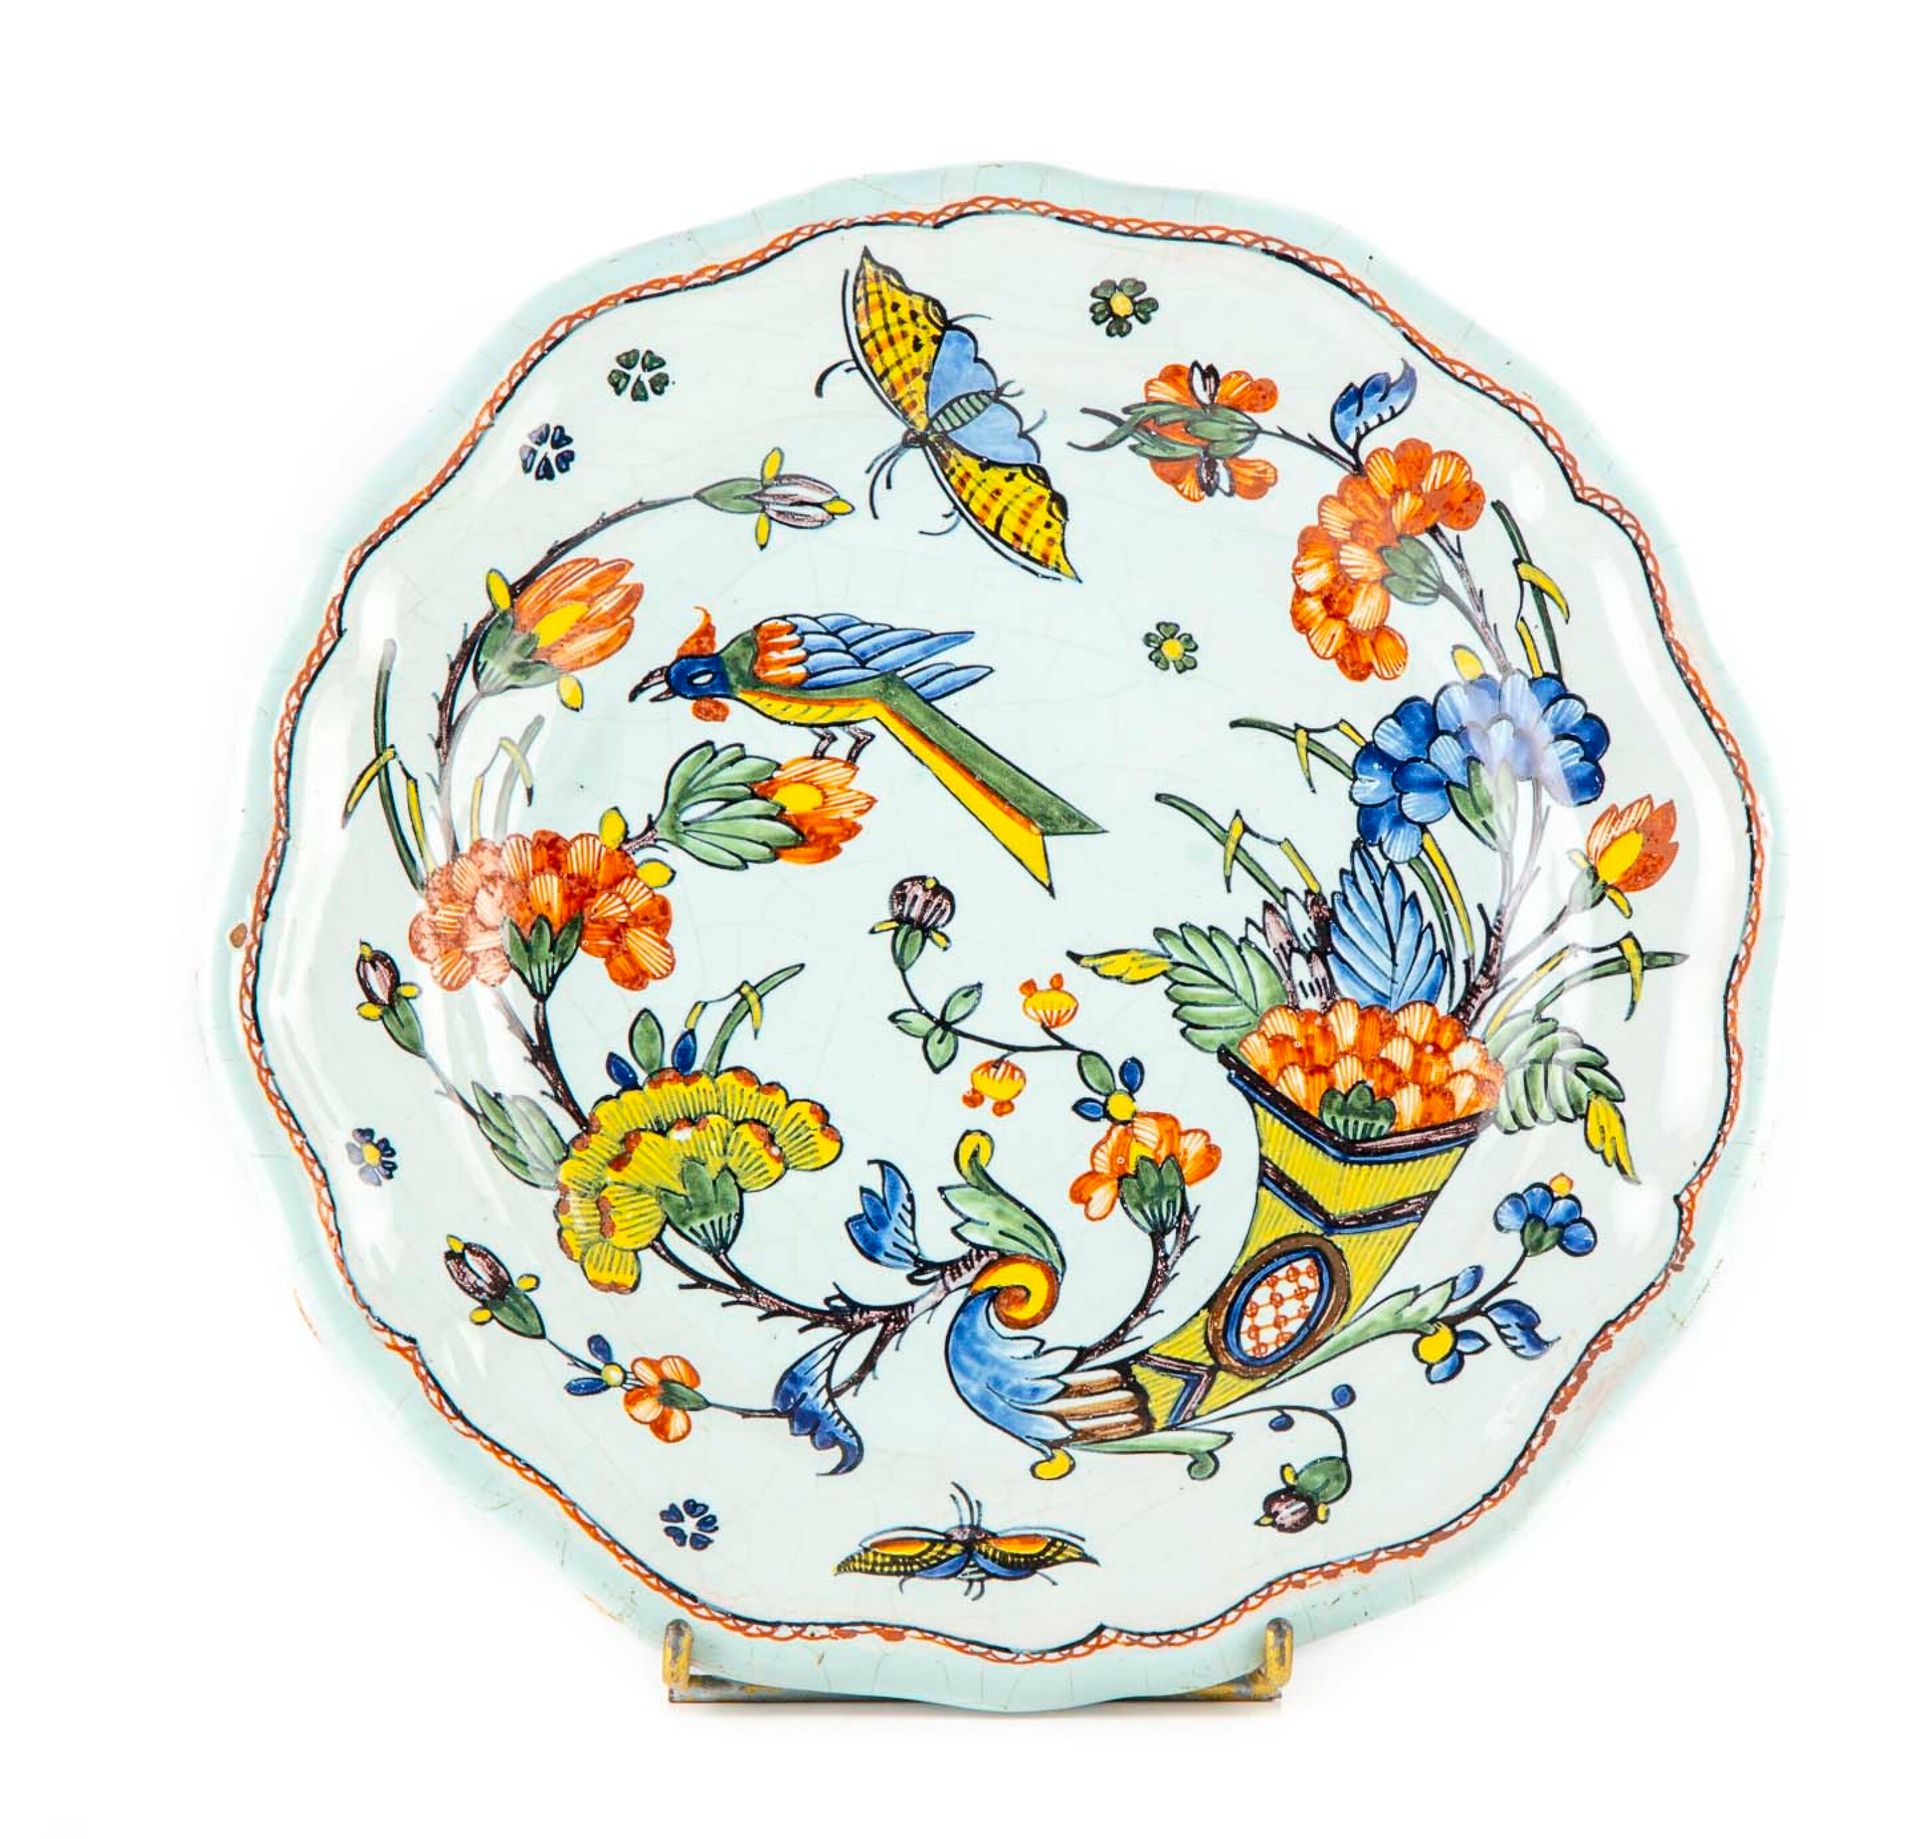 ROUEN ROUEN制造 - 十八世纪

扇形边缘的陶器盘，饰有玉米花、鸟和蝴蝶

D.26厘米

划痕